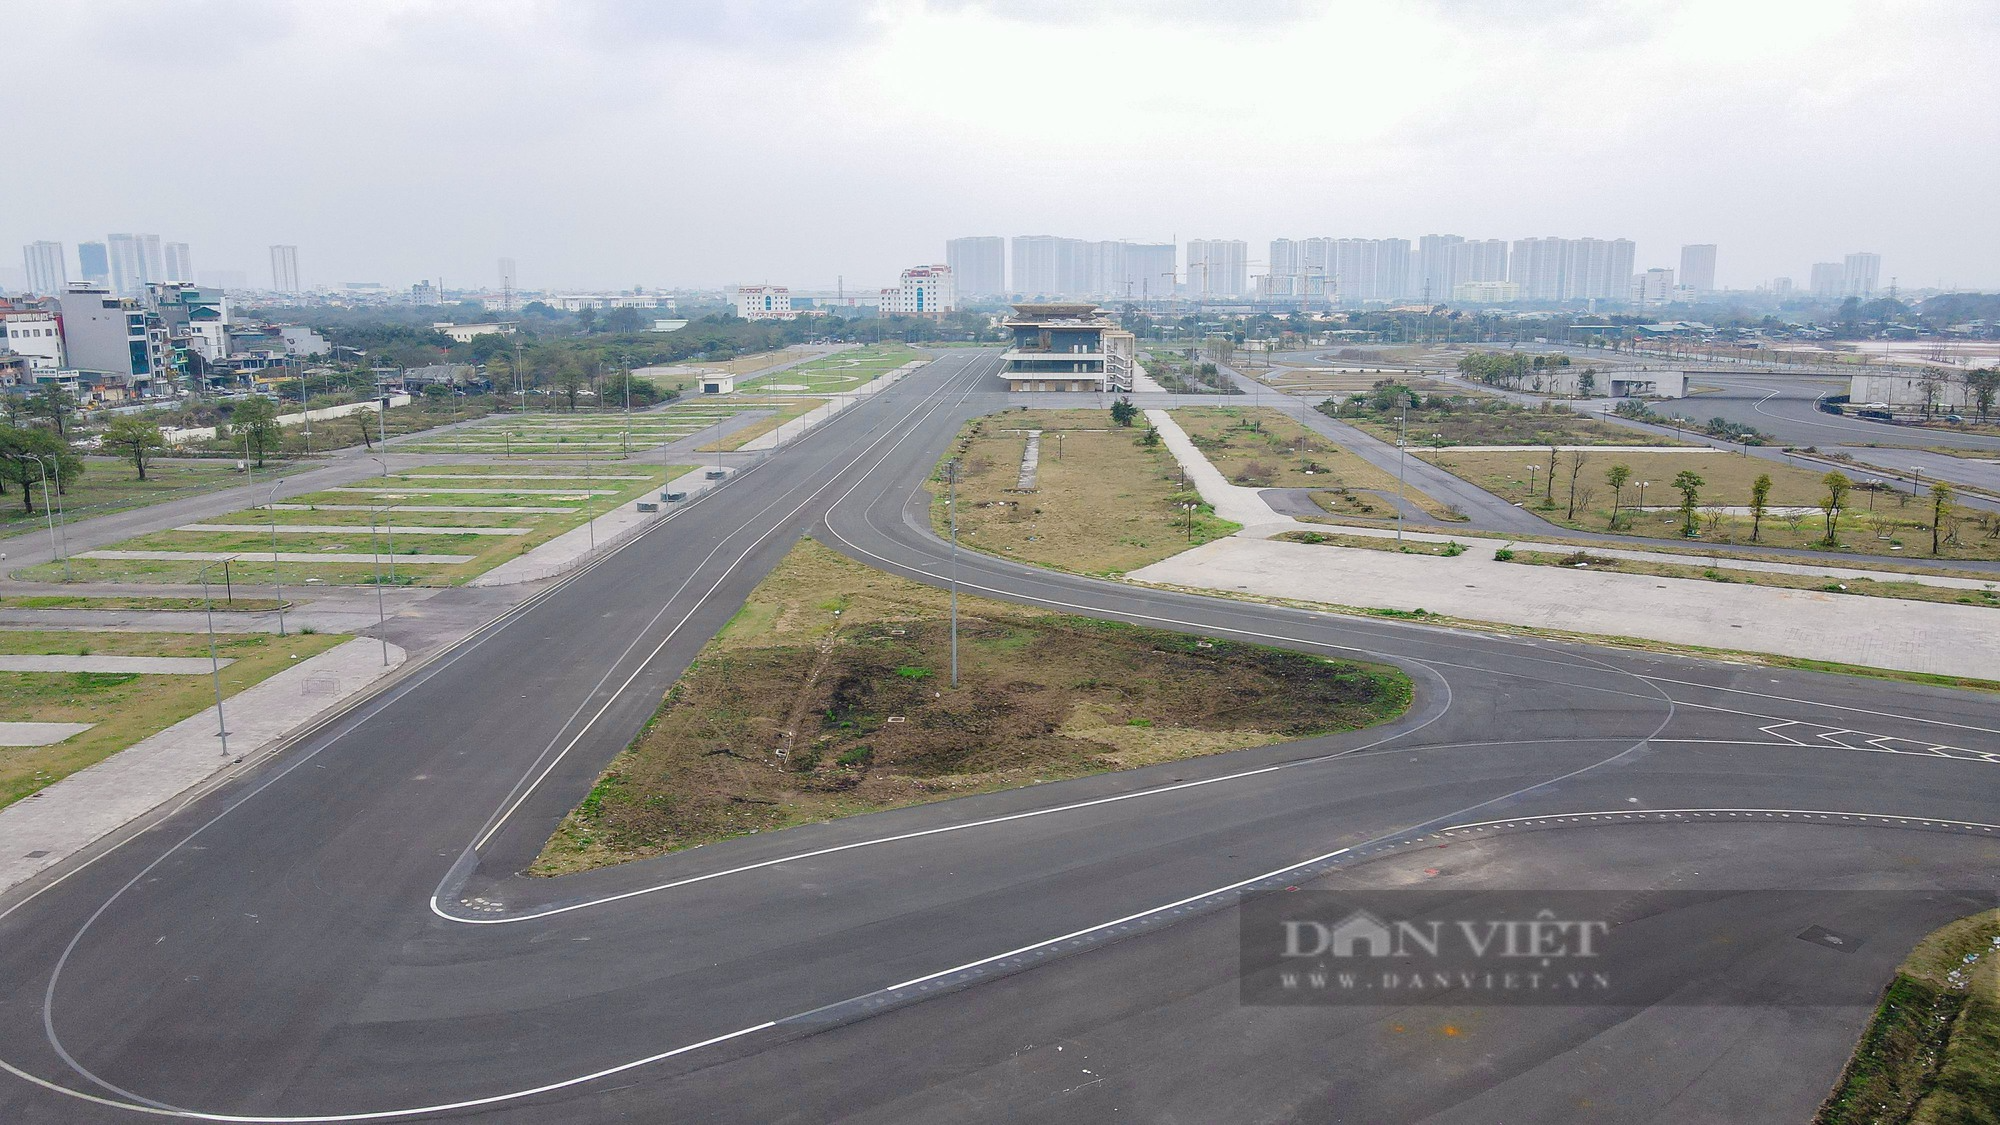 Hiện trạng 300.000 m2 đường đua F1 sau khi Hà Nội chuyển đổi mục đích khai thác, sử dụng - Ảnh 2.